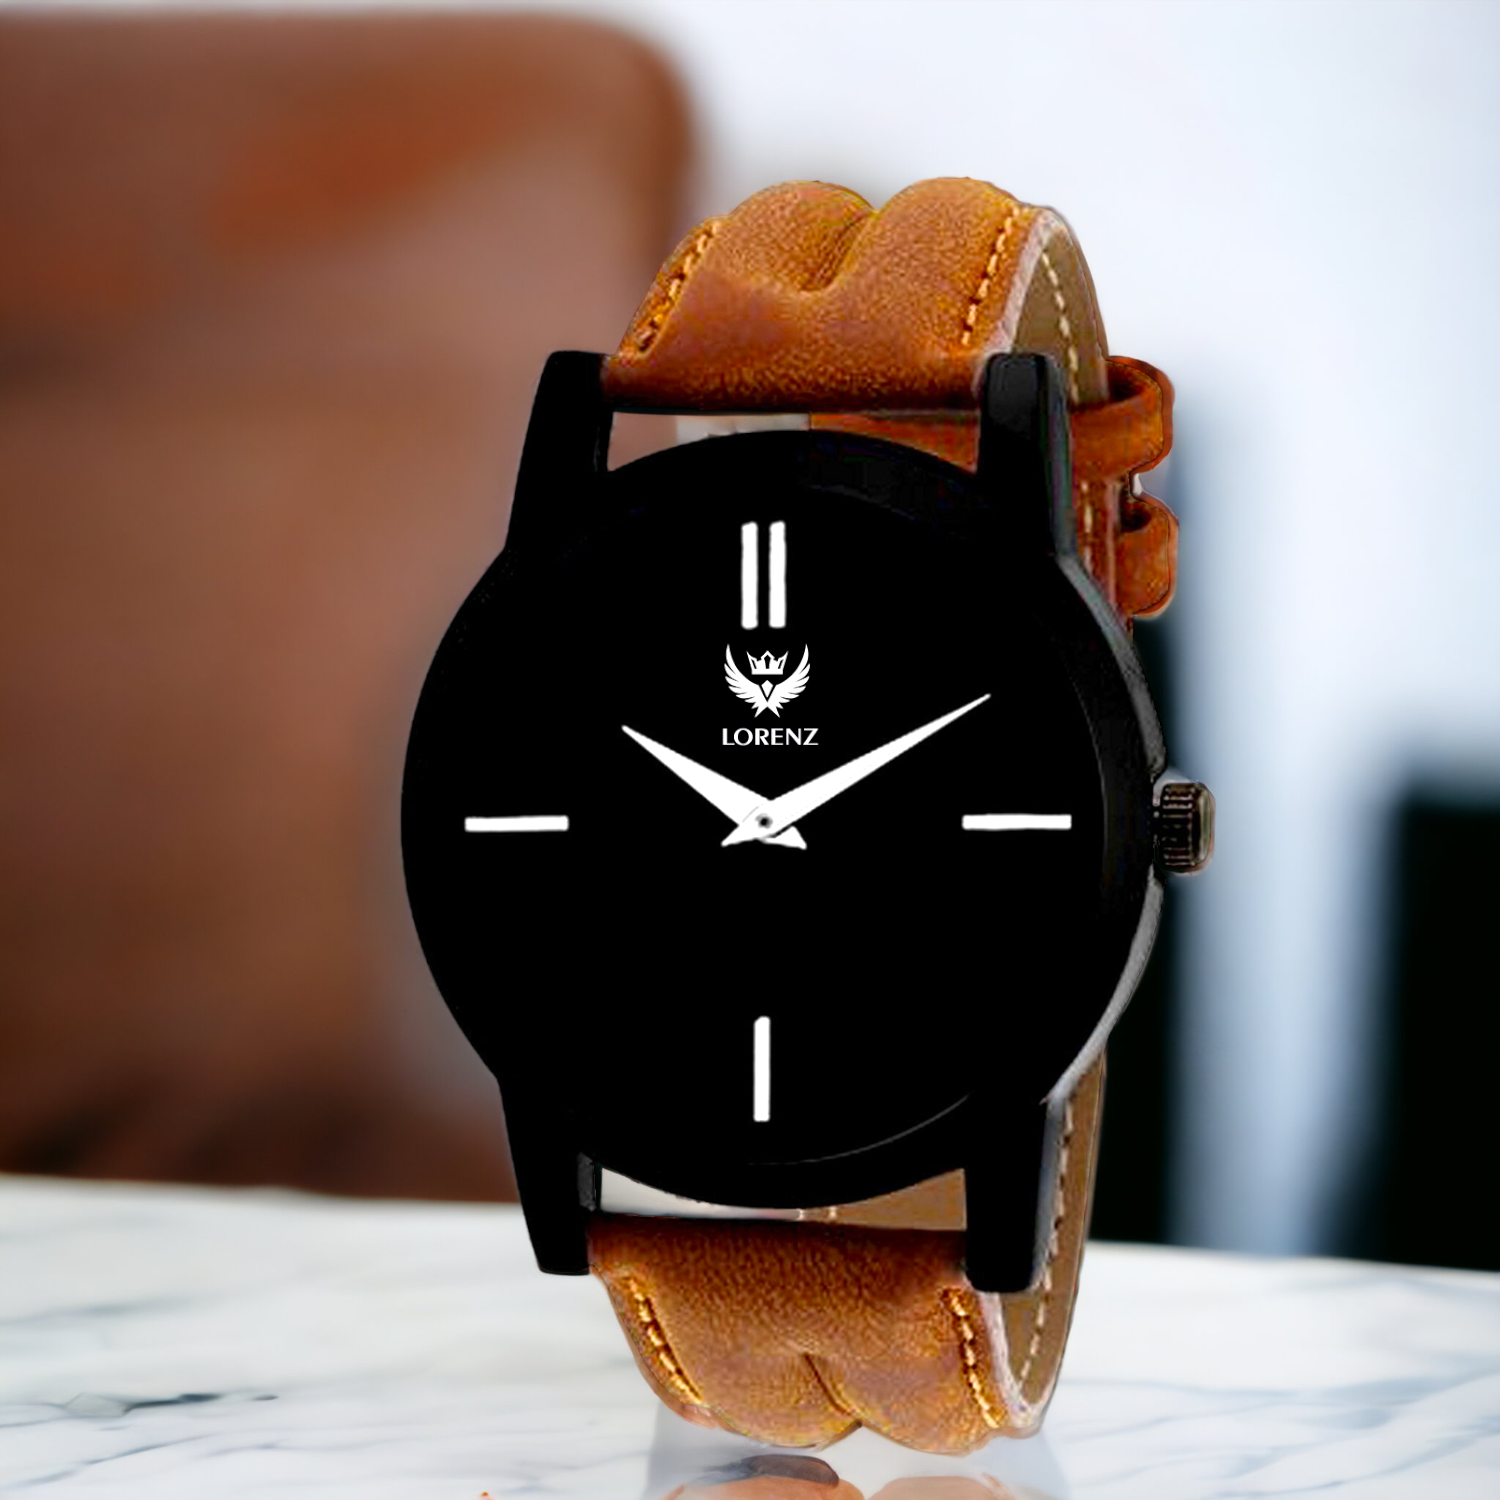 Lorenz Black Dial Men's Analog Wrist Watch- MK-1013A